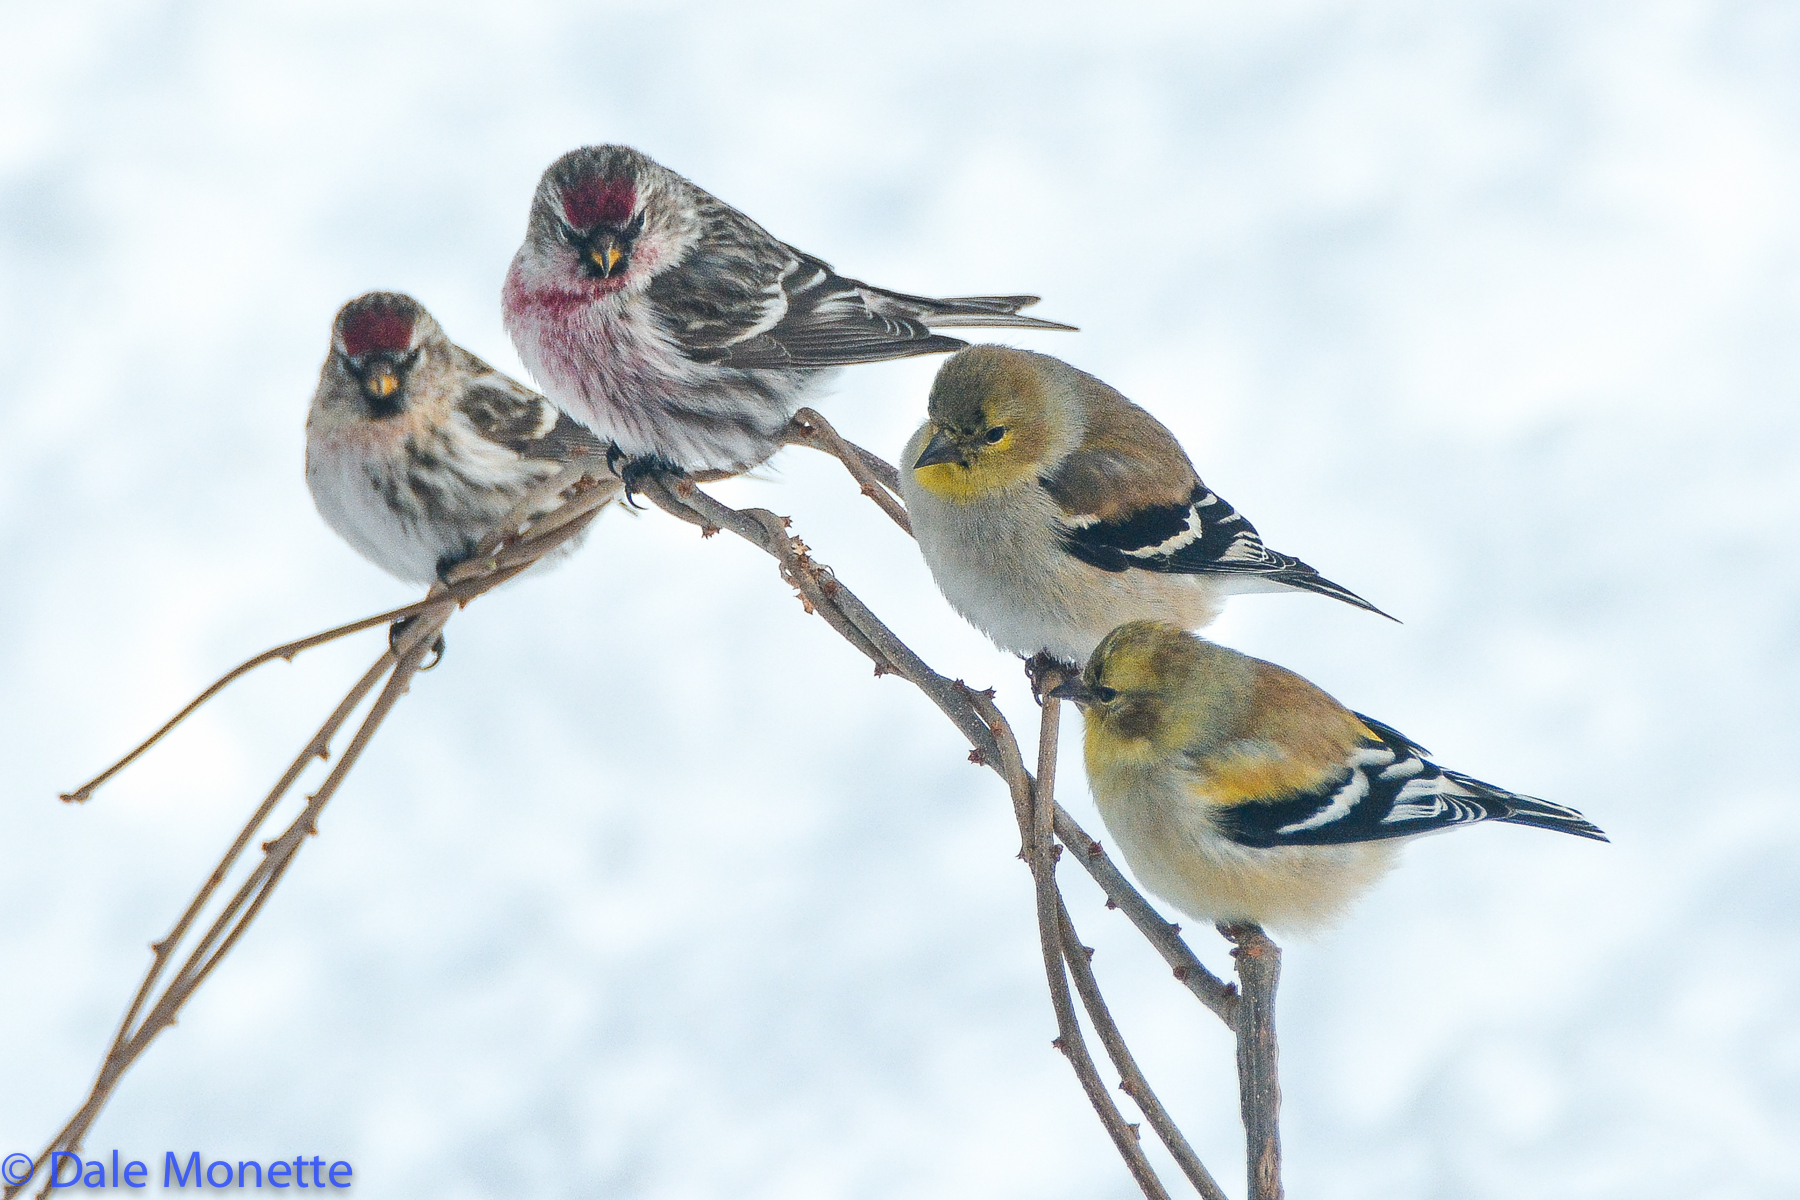 Common redpolls / Goldfinches